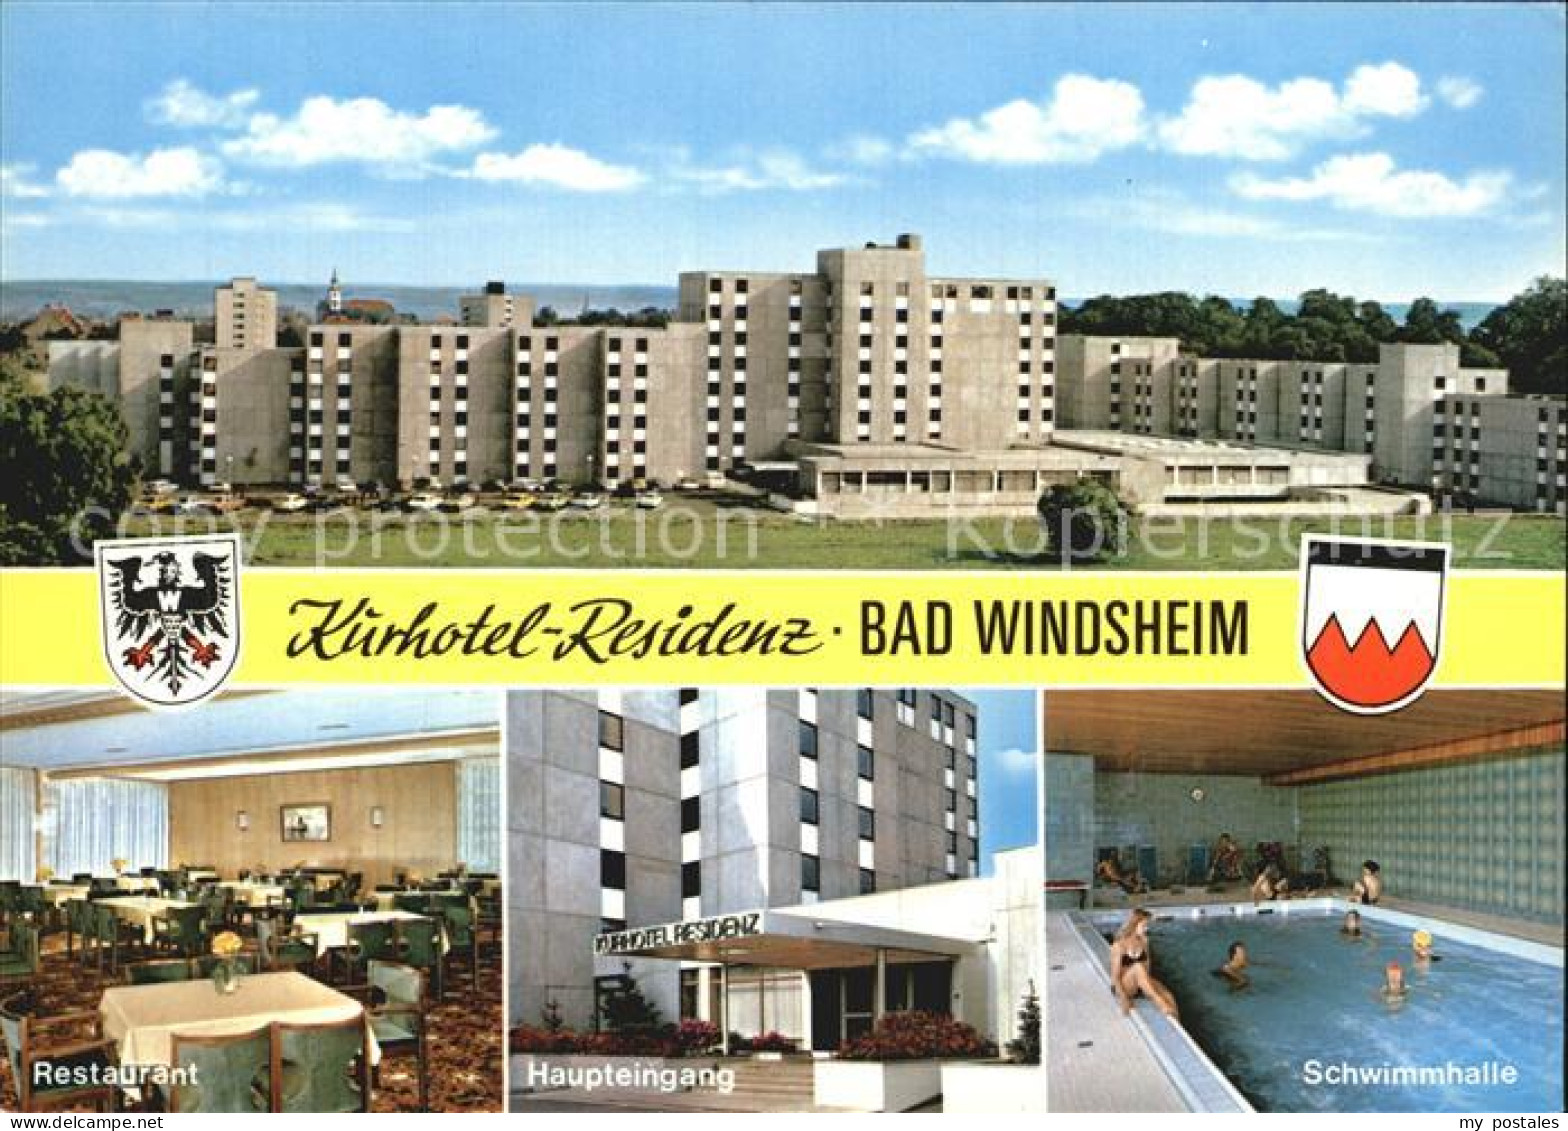 72509854 Bad Windsheim Kurhotel Residenz Restaurant Schwimmhalle Bad Windsheim - Bad Windsheim